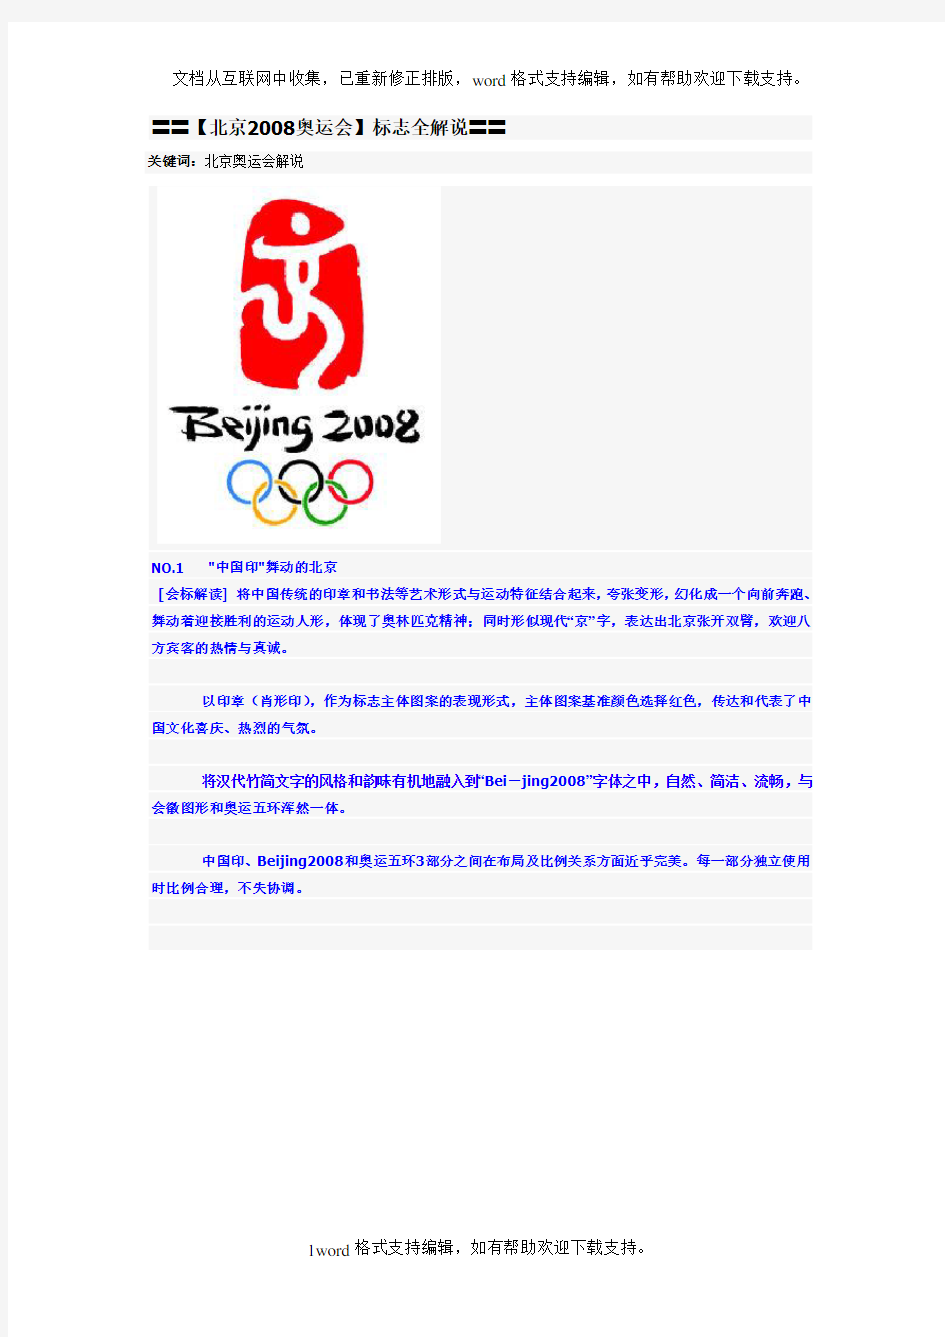 北京奥运会标志解说